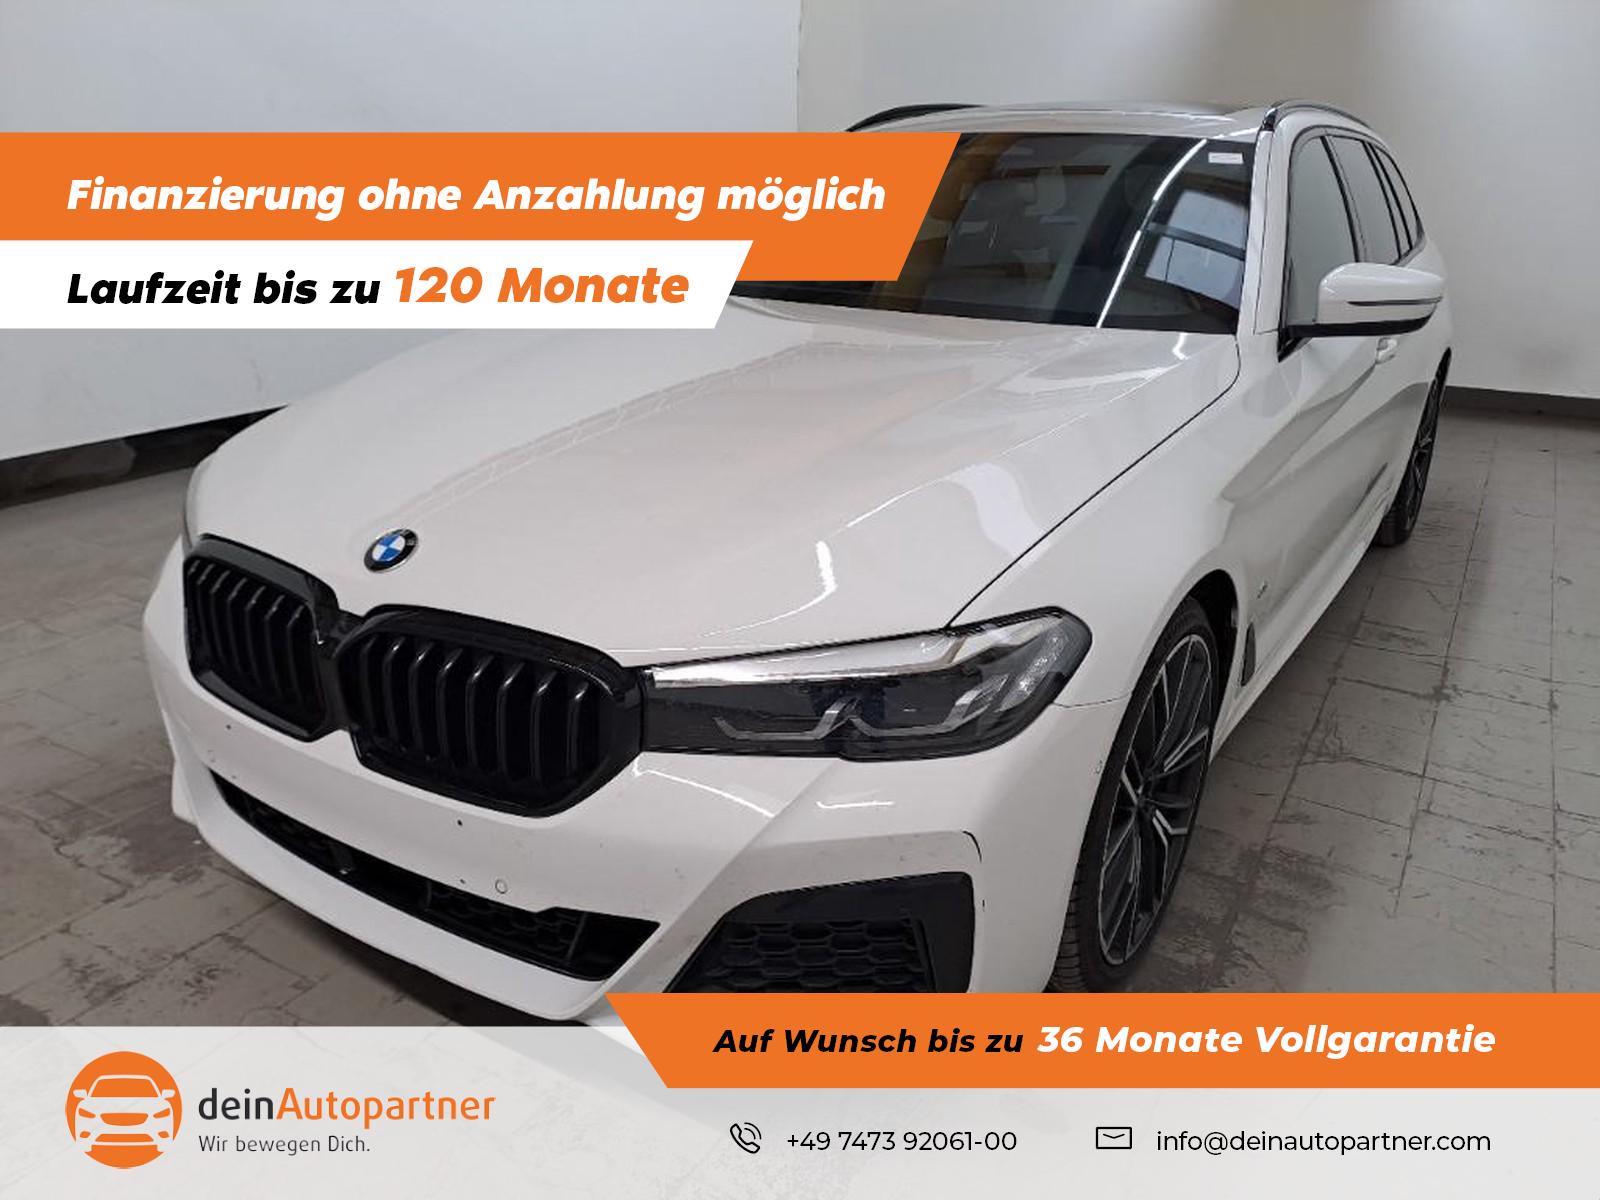 BMW 530 d xDrive M Sport gebraucht kaufen in Mössingen Preis 49800 eur -  Int.Nr.: 2805